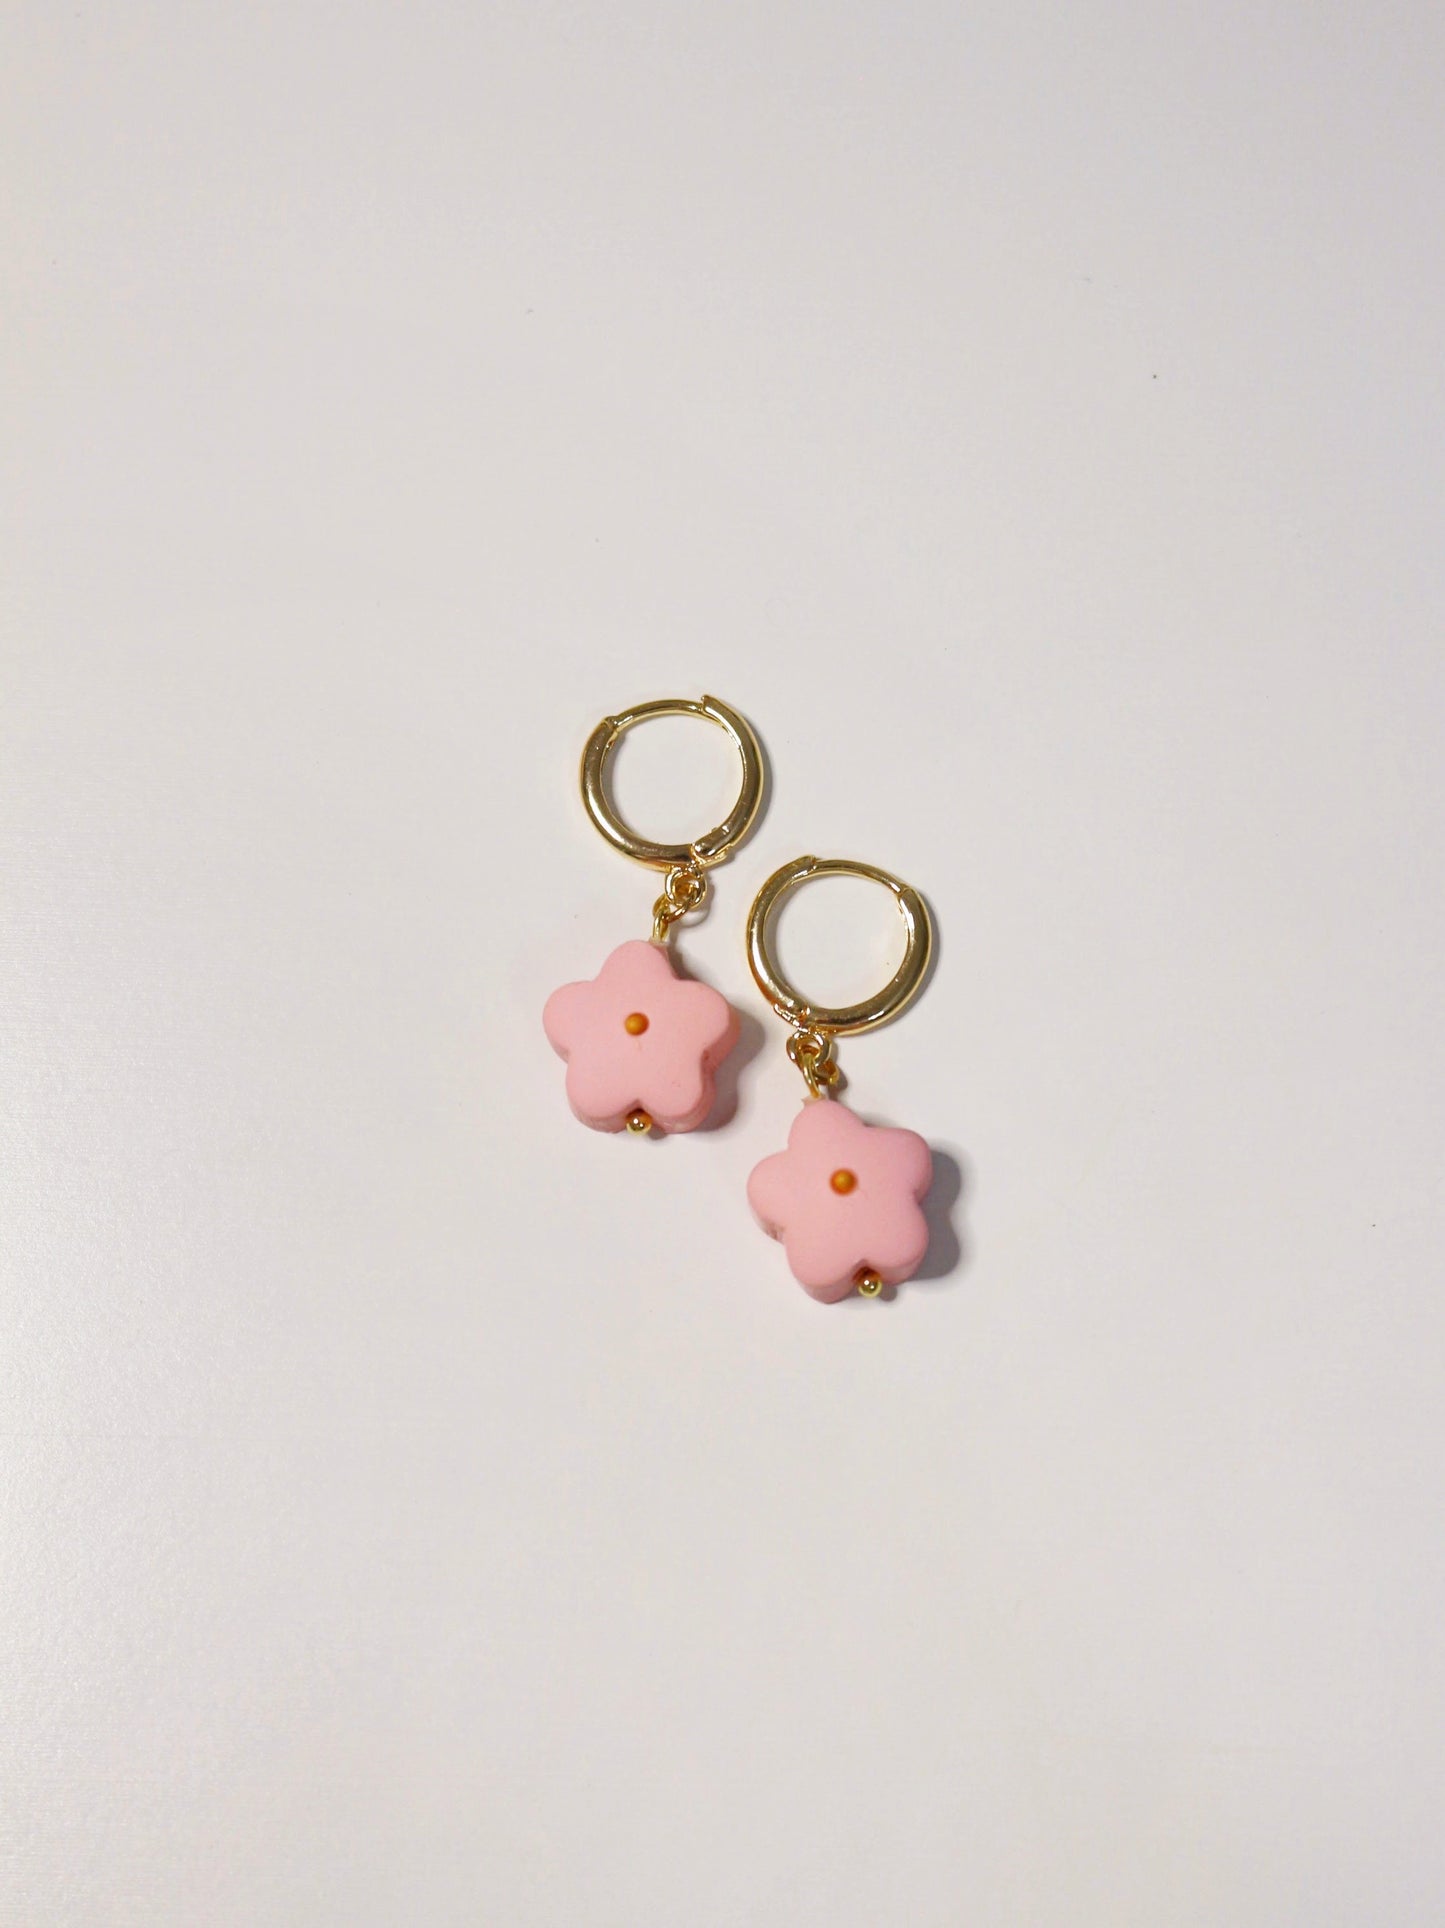 Pink Chonky Daisy - Huggie Earrings